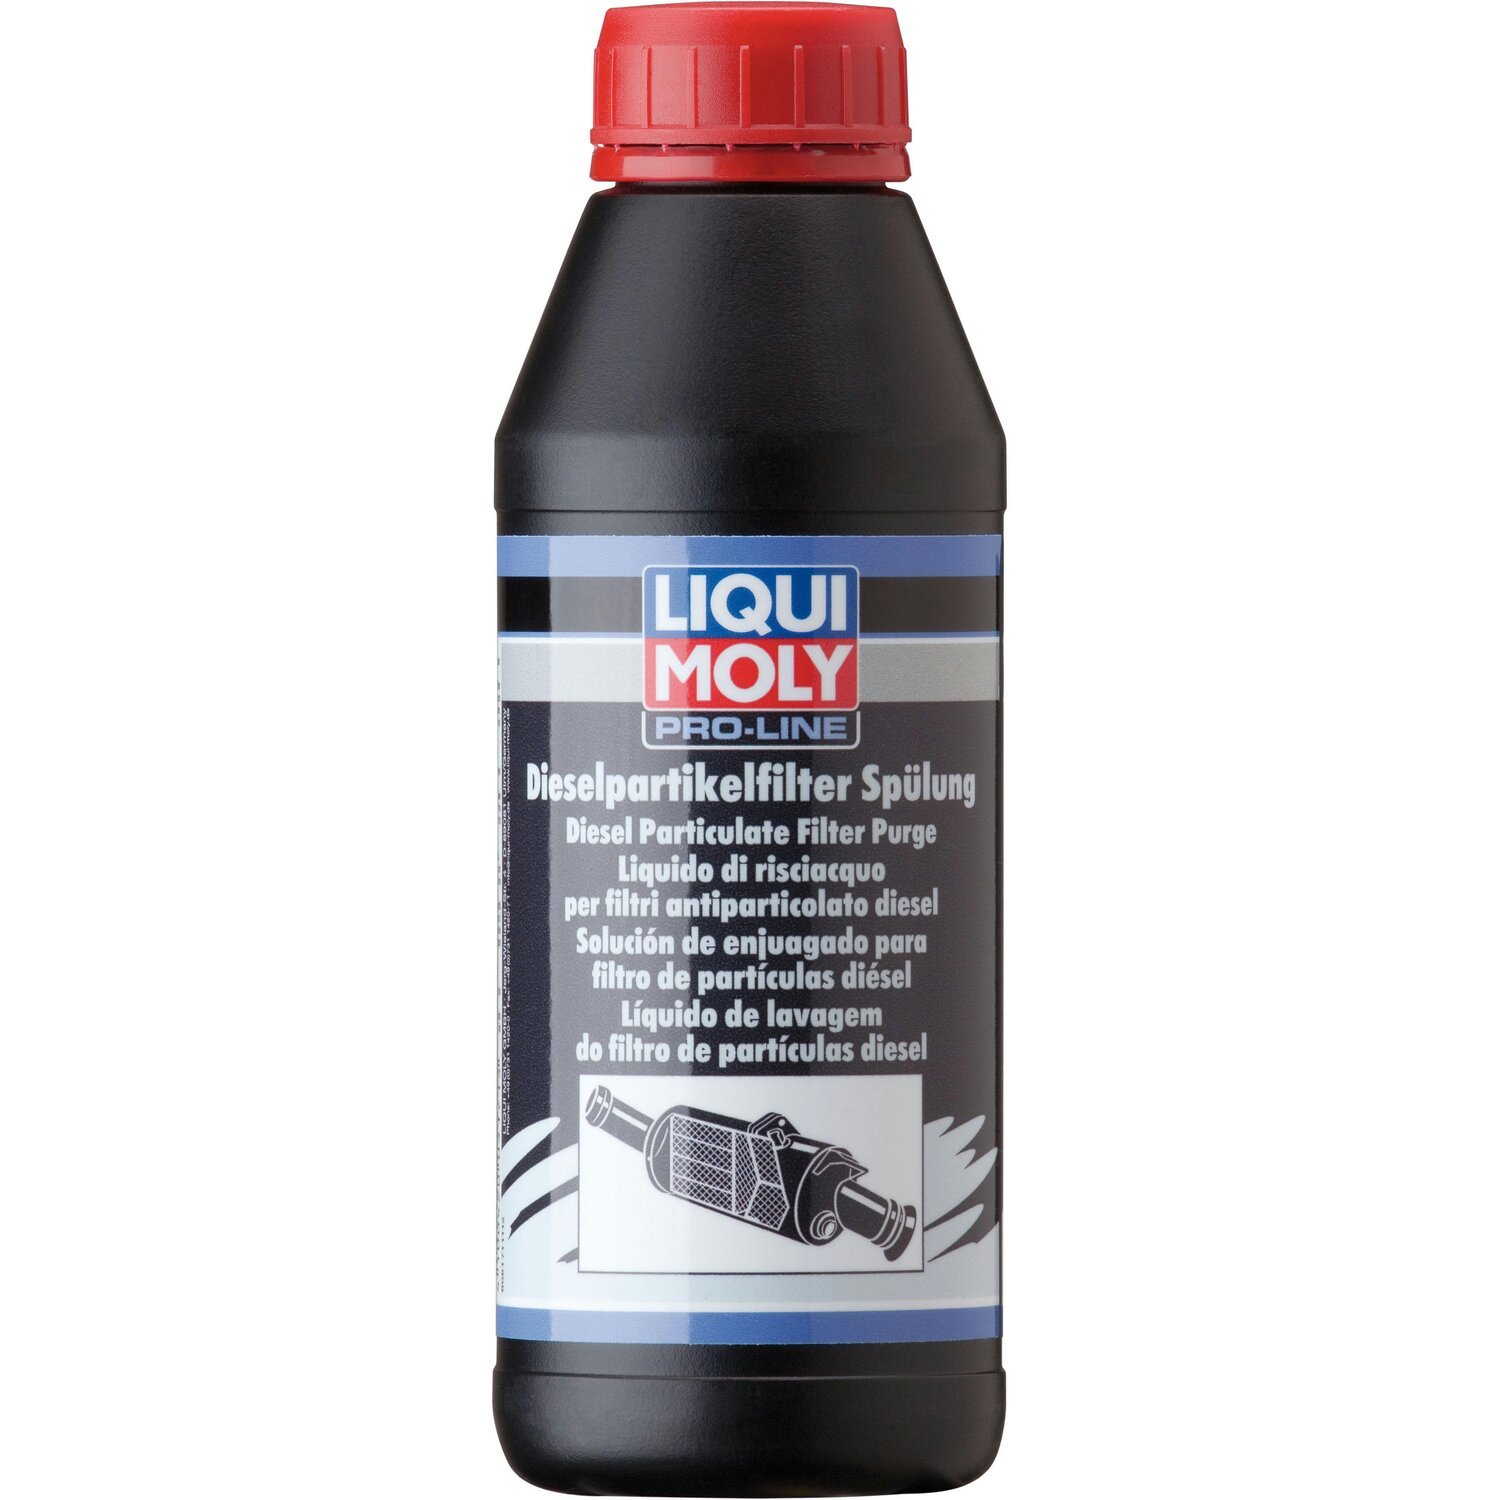 Очиститель Liqui Moly для очистки сажевых фильтров (смывка) Pro-Line Dpf Spulung 0,5л (4100420051715) фото 